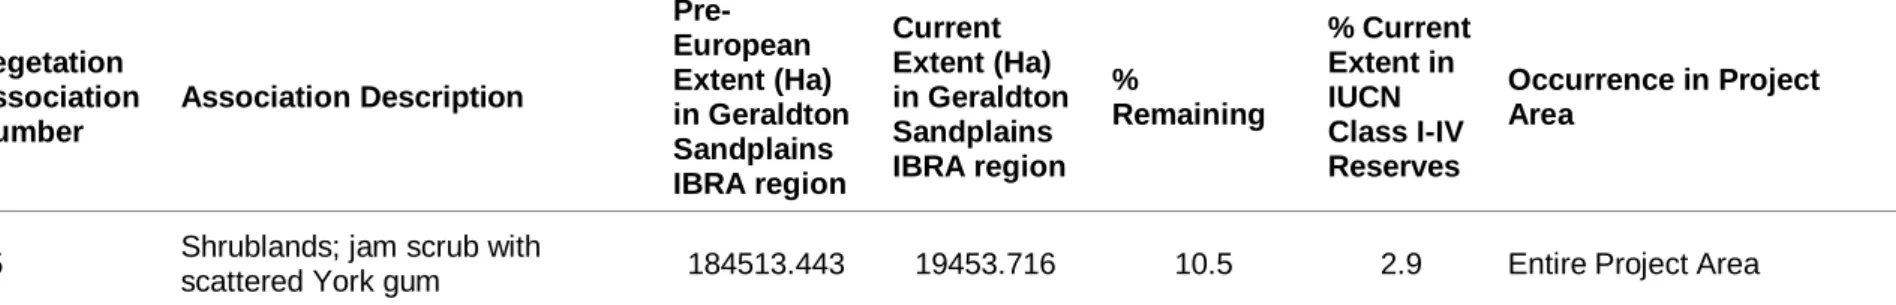 Table 2 Regional Assessment of Vegetation Extent (Shepherd, 2005)